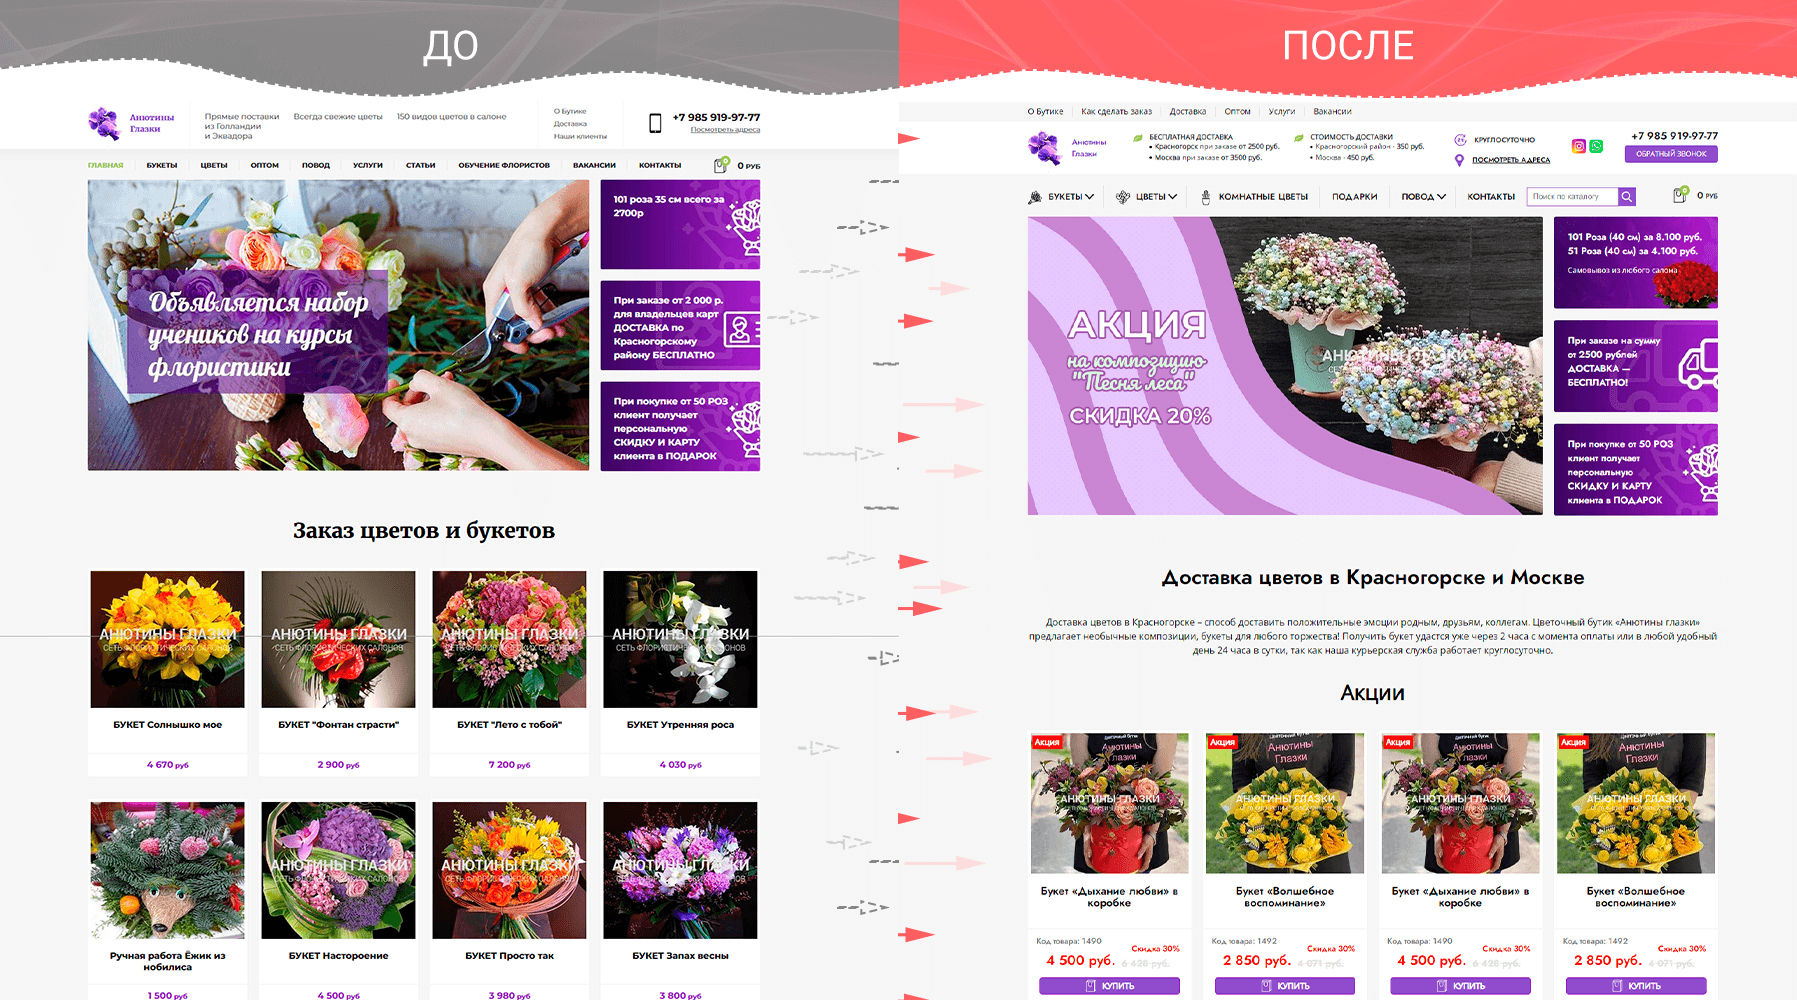 Остановили падение позиций сайта, вернули рост поискового трафика anutiny-glazki.ru